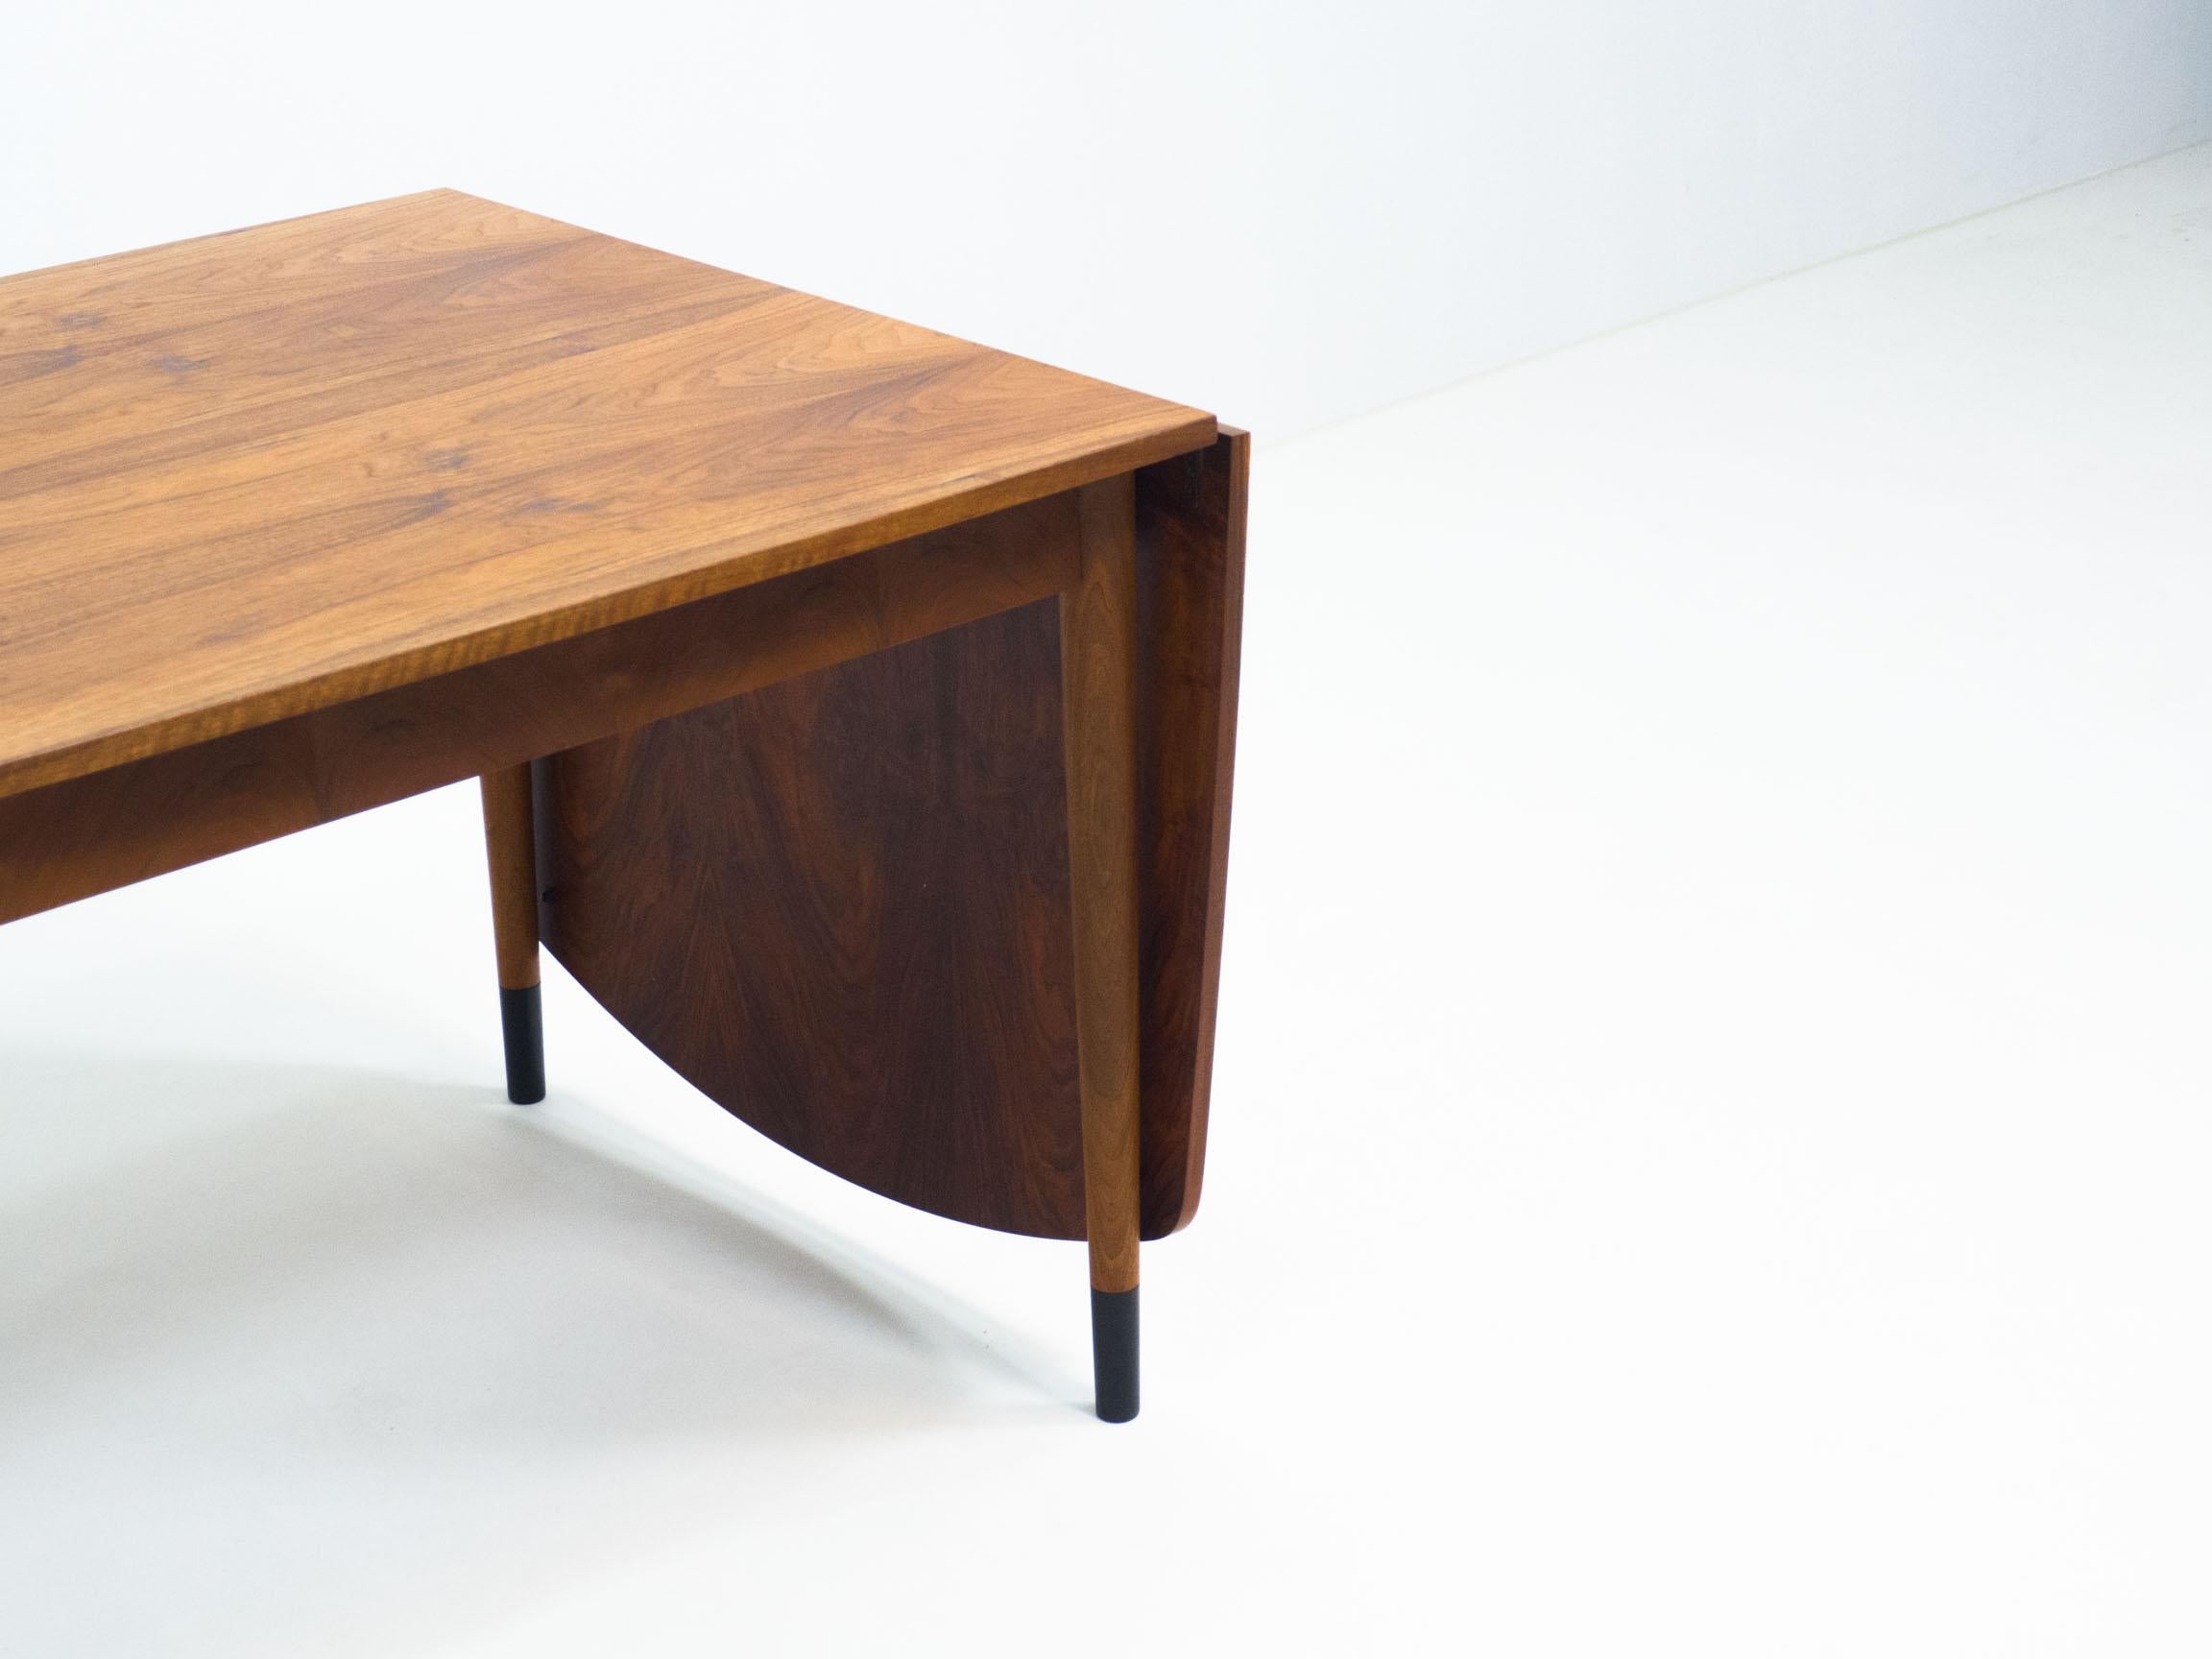 Klapptisch im Vintage-Stil mit schönen organischen Formen.

Dieser Tisch hat eine durchgehende Kurve an den Kanten. Dies lässt das Design sehr organisch wirken. Die Oberfläche wurde mit Walnussfurnier furniert. Die Beine haben dunkel gefärbte